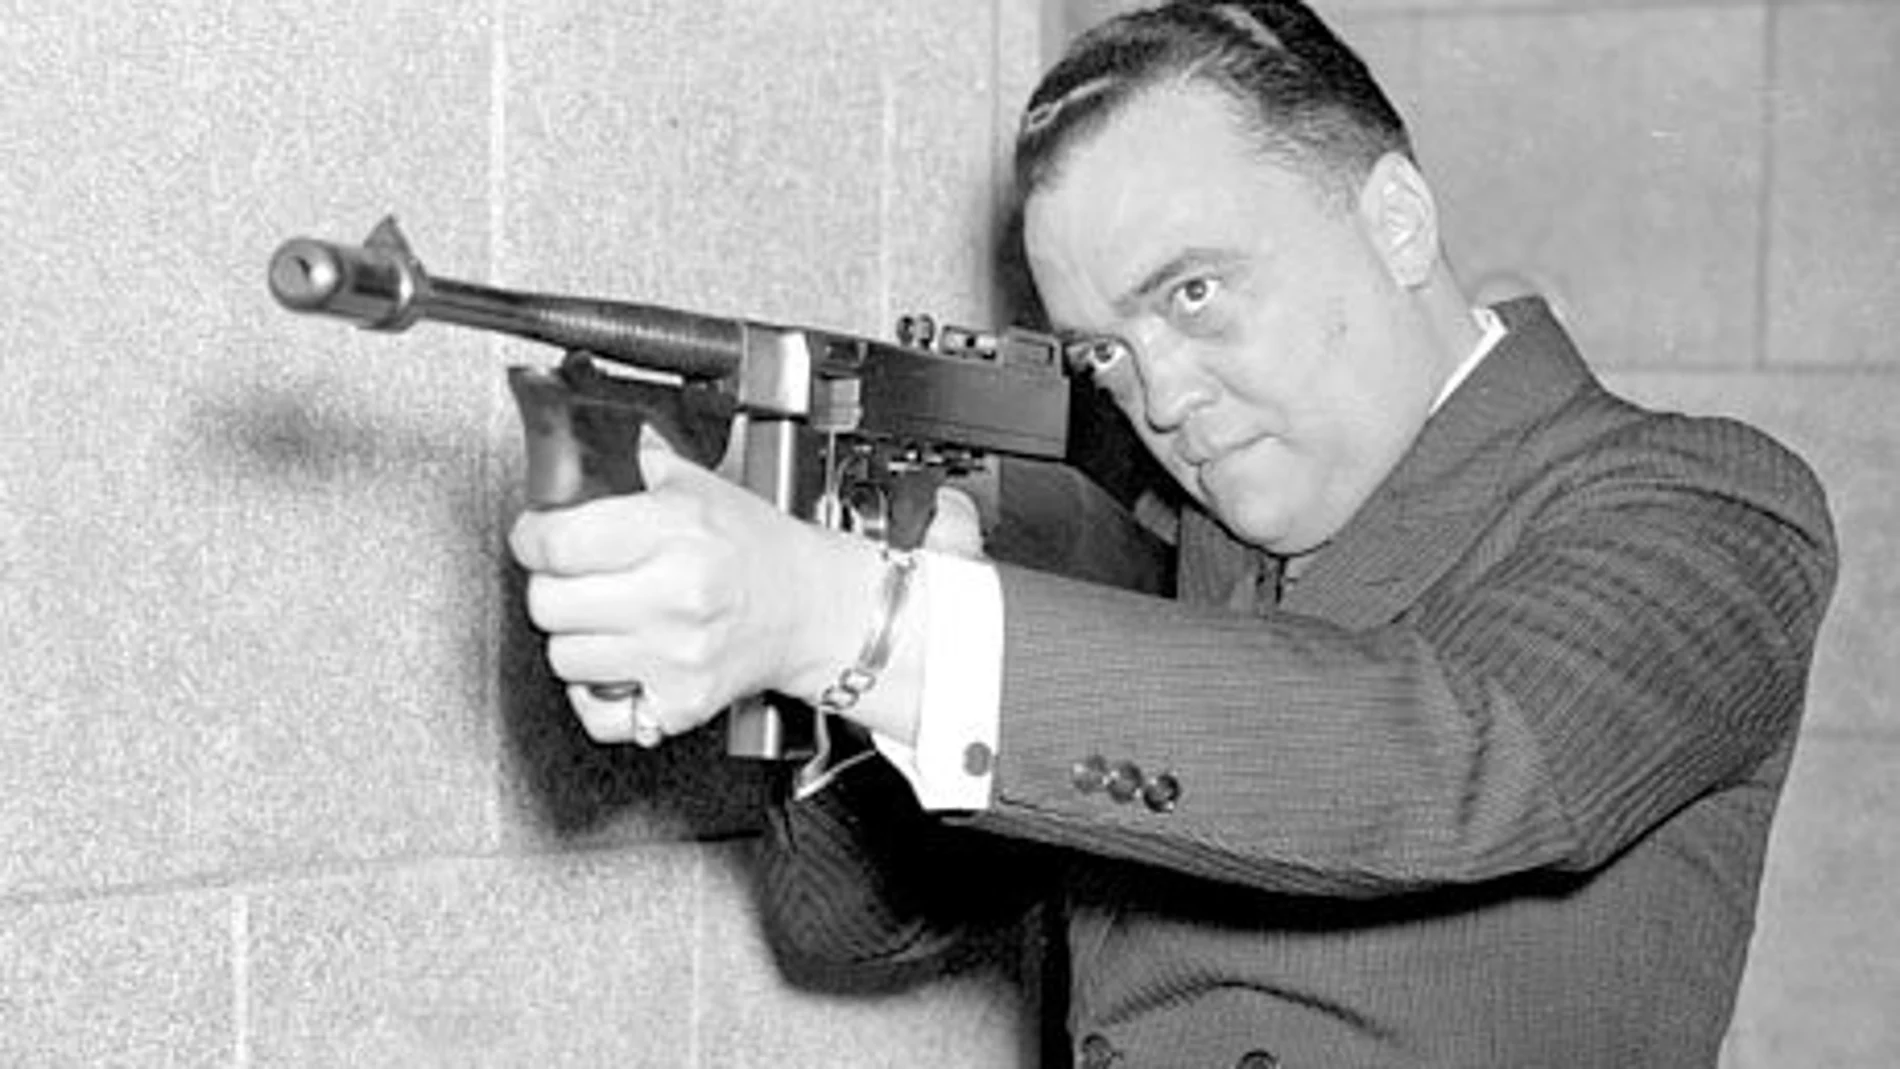 BUENA PUNTERÍA. Edgar Hoover dirigió con mano firme el FBI durante treinta y siete años. Su obsesión por escudriñar las intimidades ajenas no conoció límites